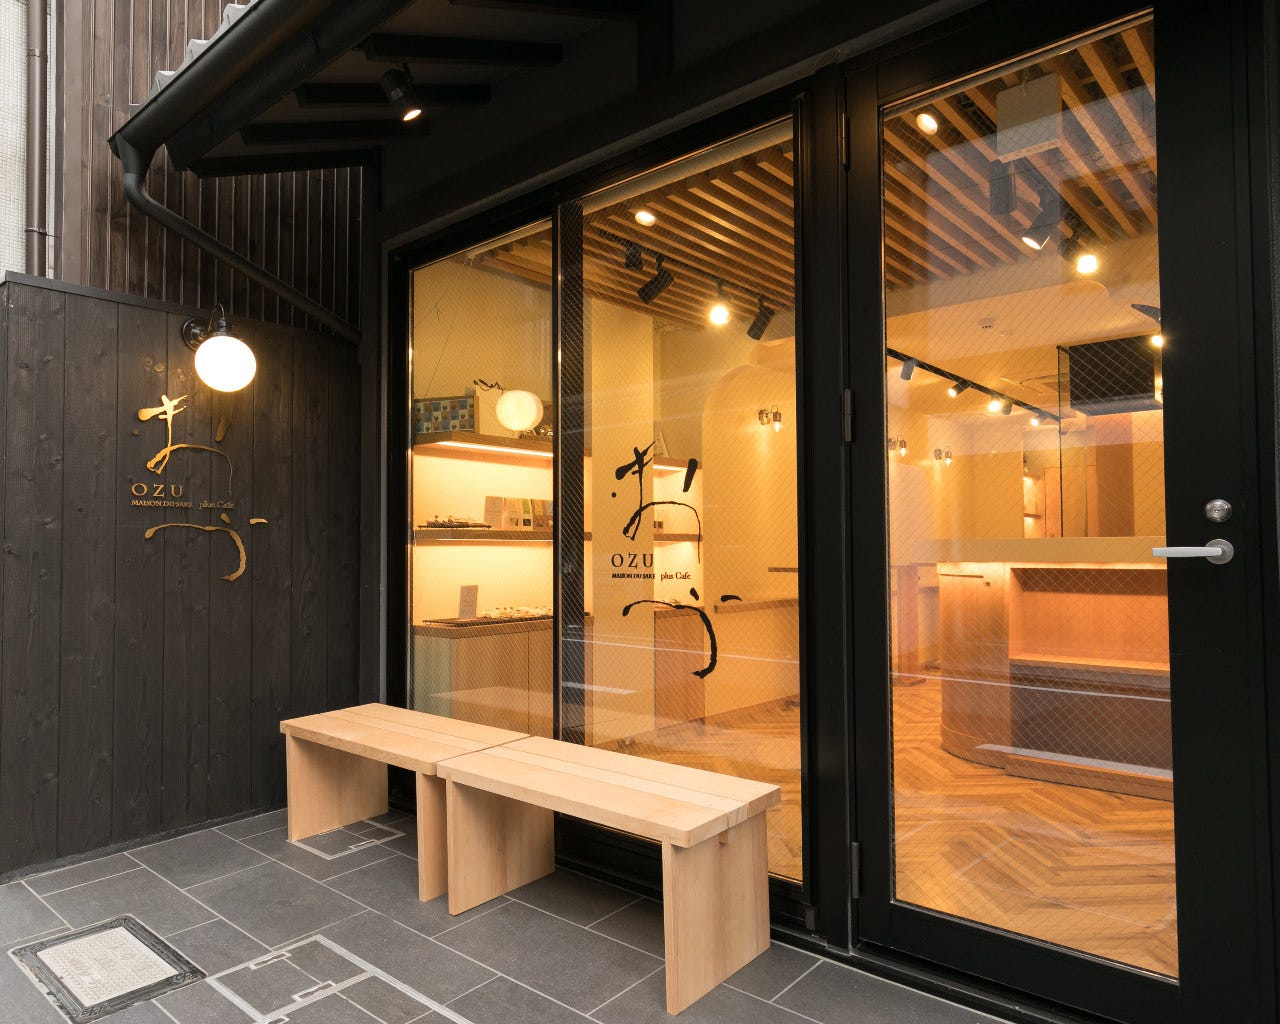 おづkyoto-maison du sake plus Cafe- image